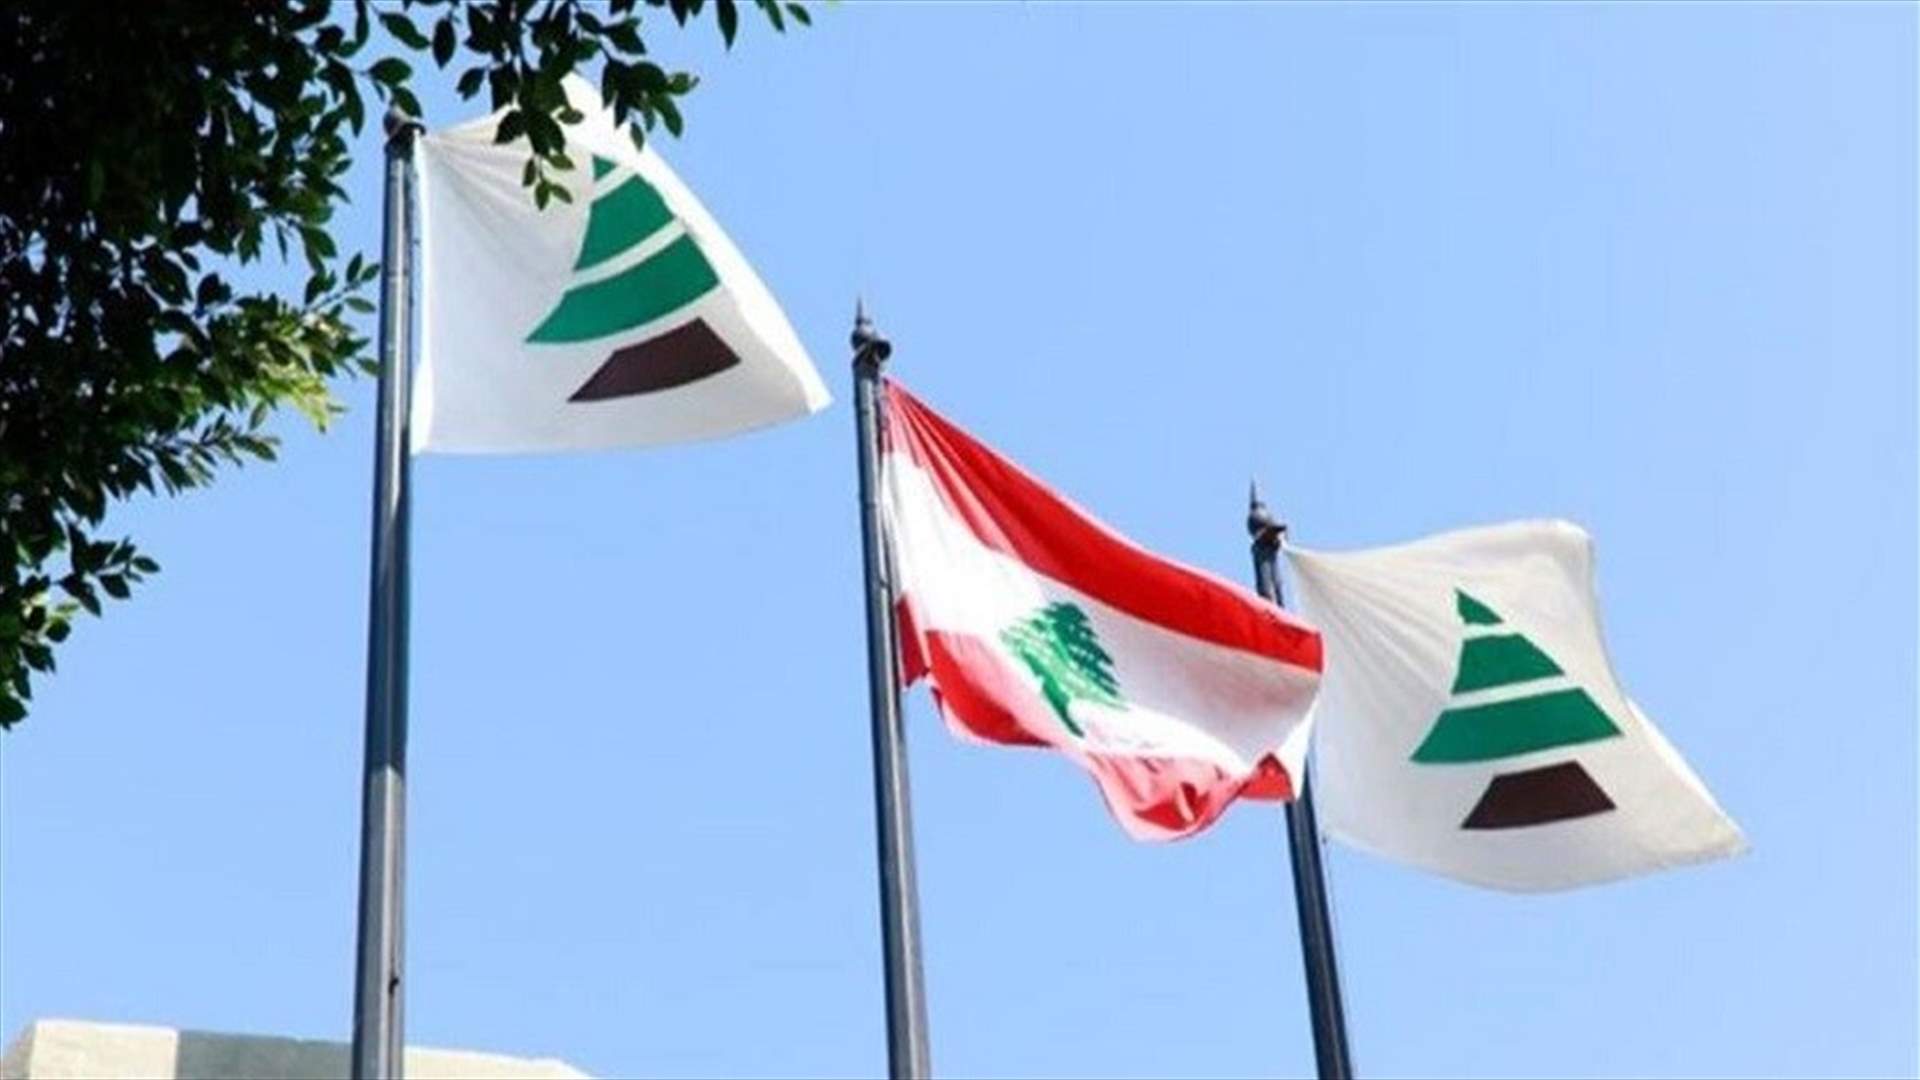 هيئة الطوارئ في الكتائب: نناشد الأمم المتّحدة اعتبار لبنان من الدرجة الاقتصادية والاجتماعية المنخفضة